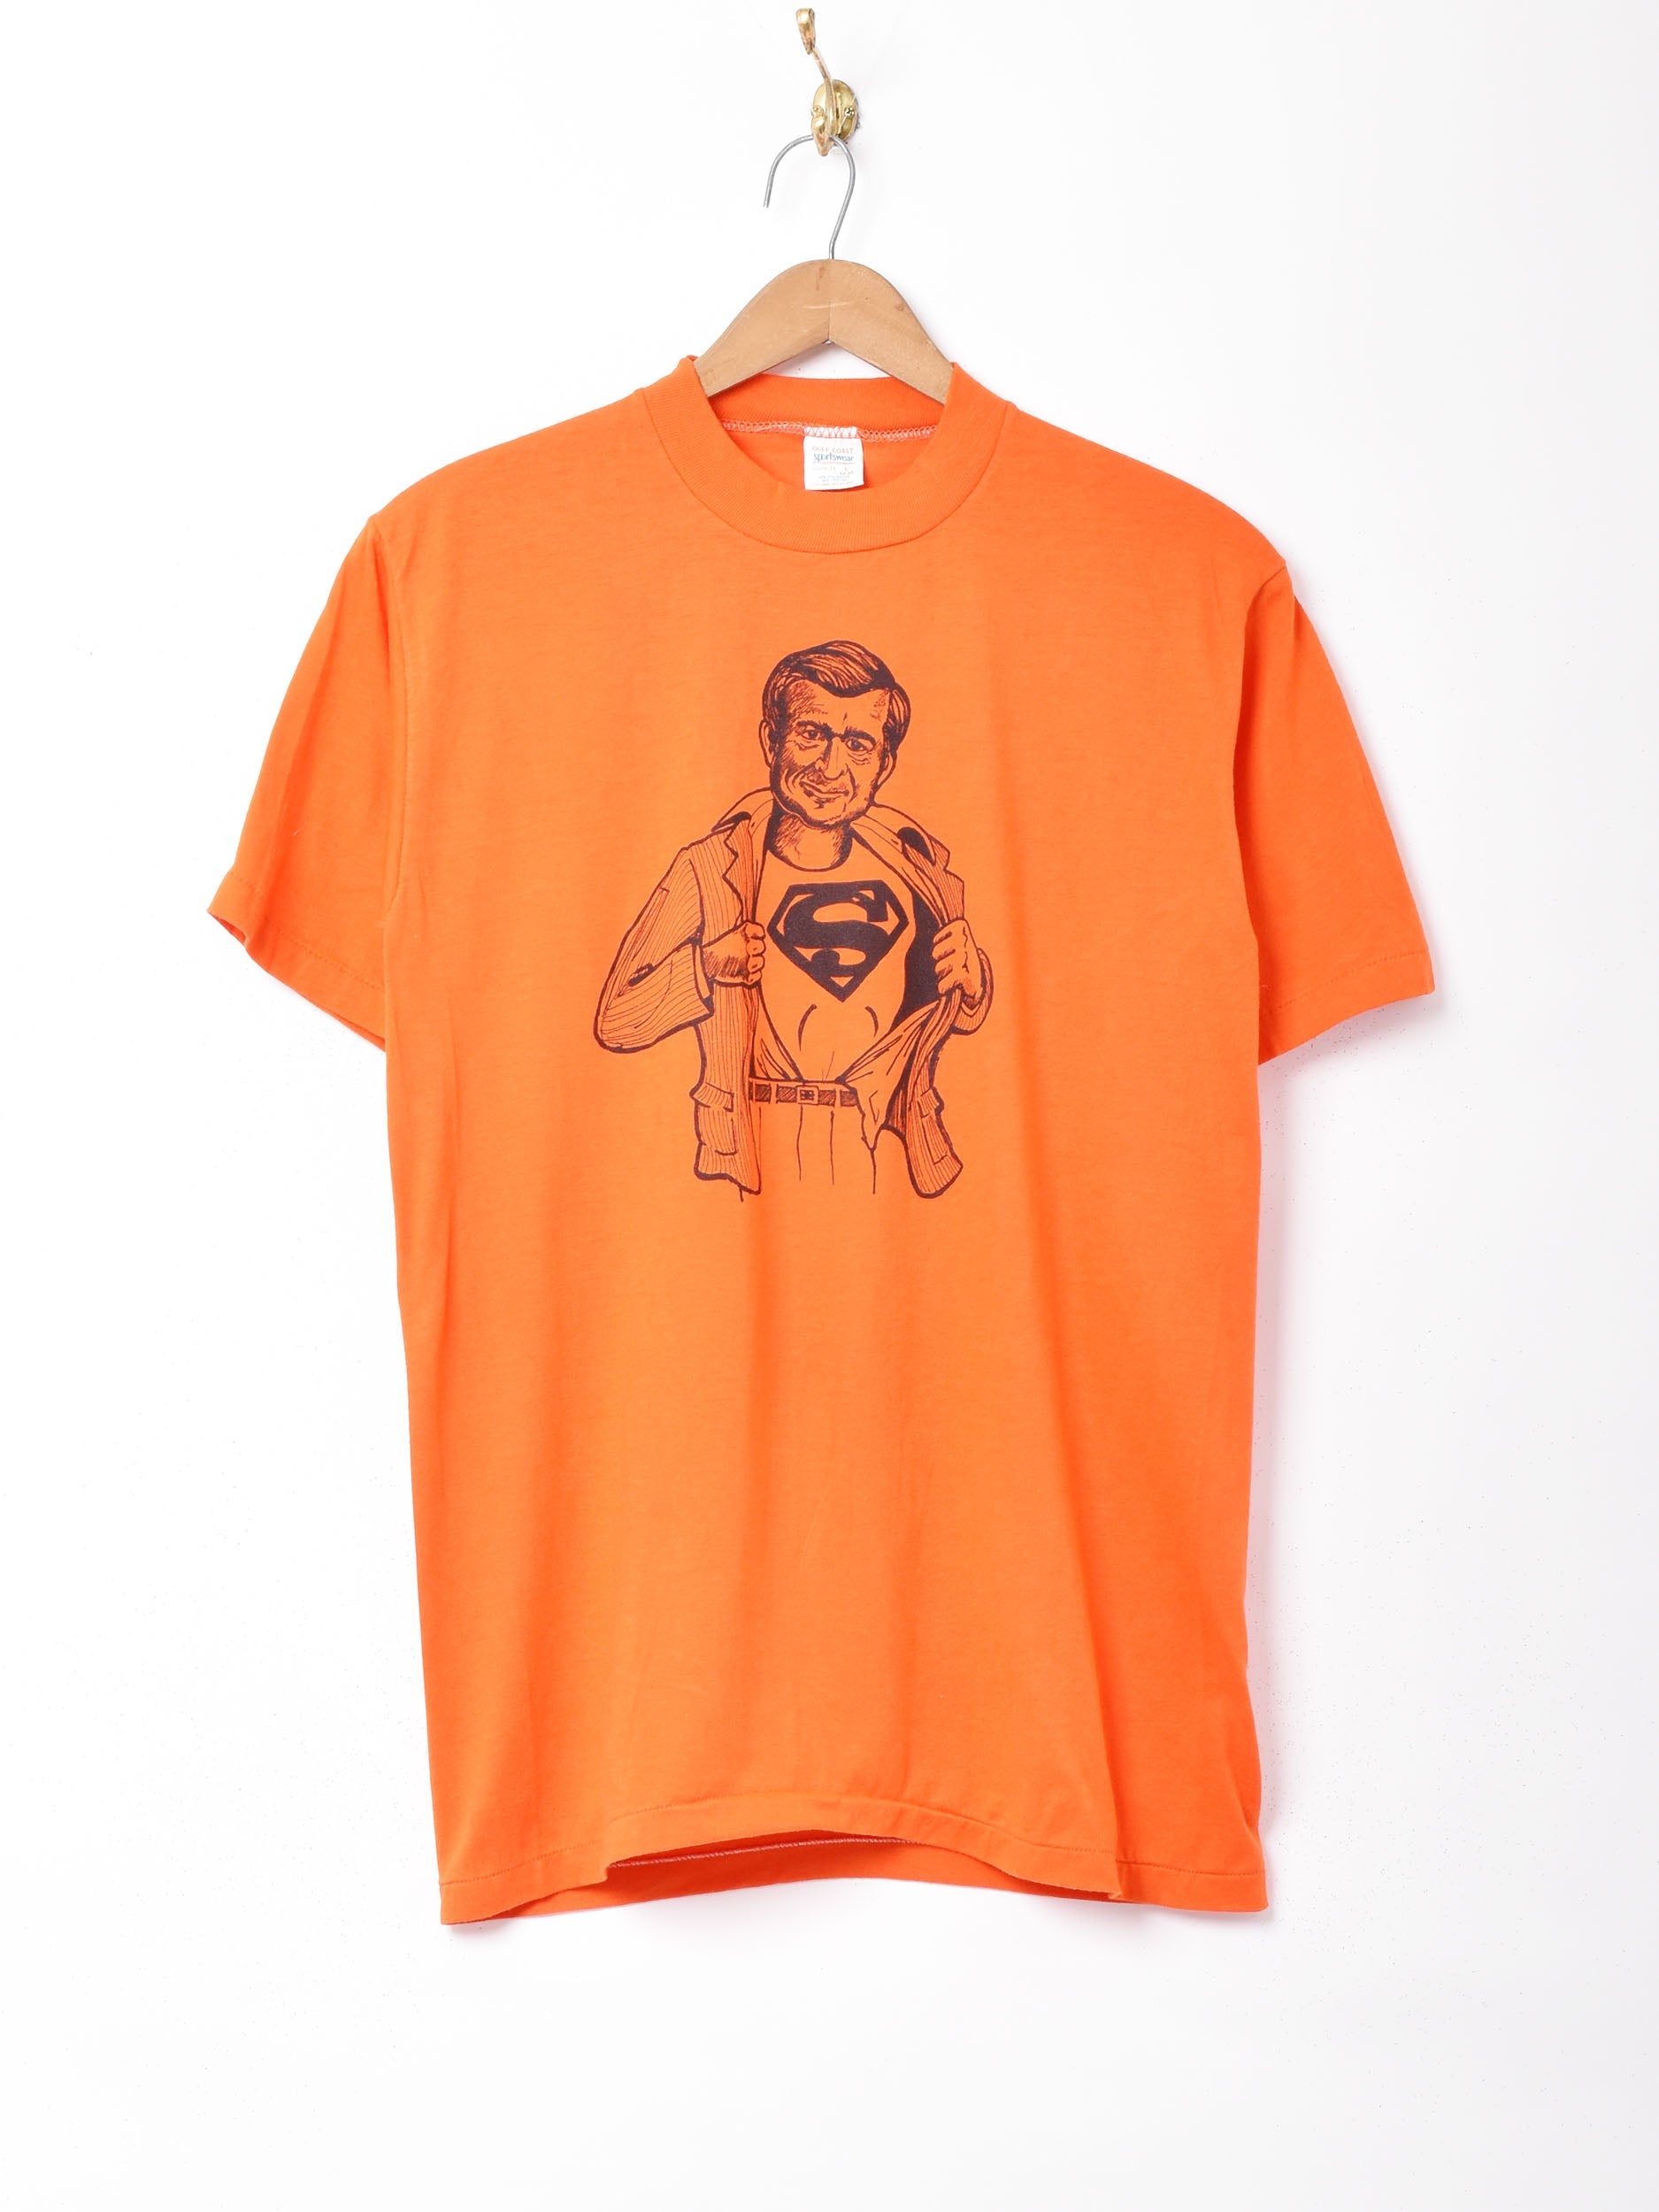 スーパーマン パロディ Tシャツ マーベル 企業 - Tシャツ/カットソー ...